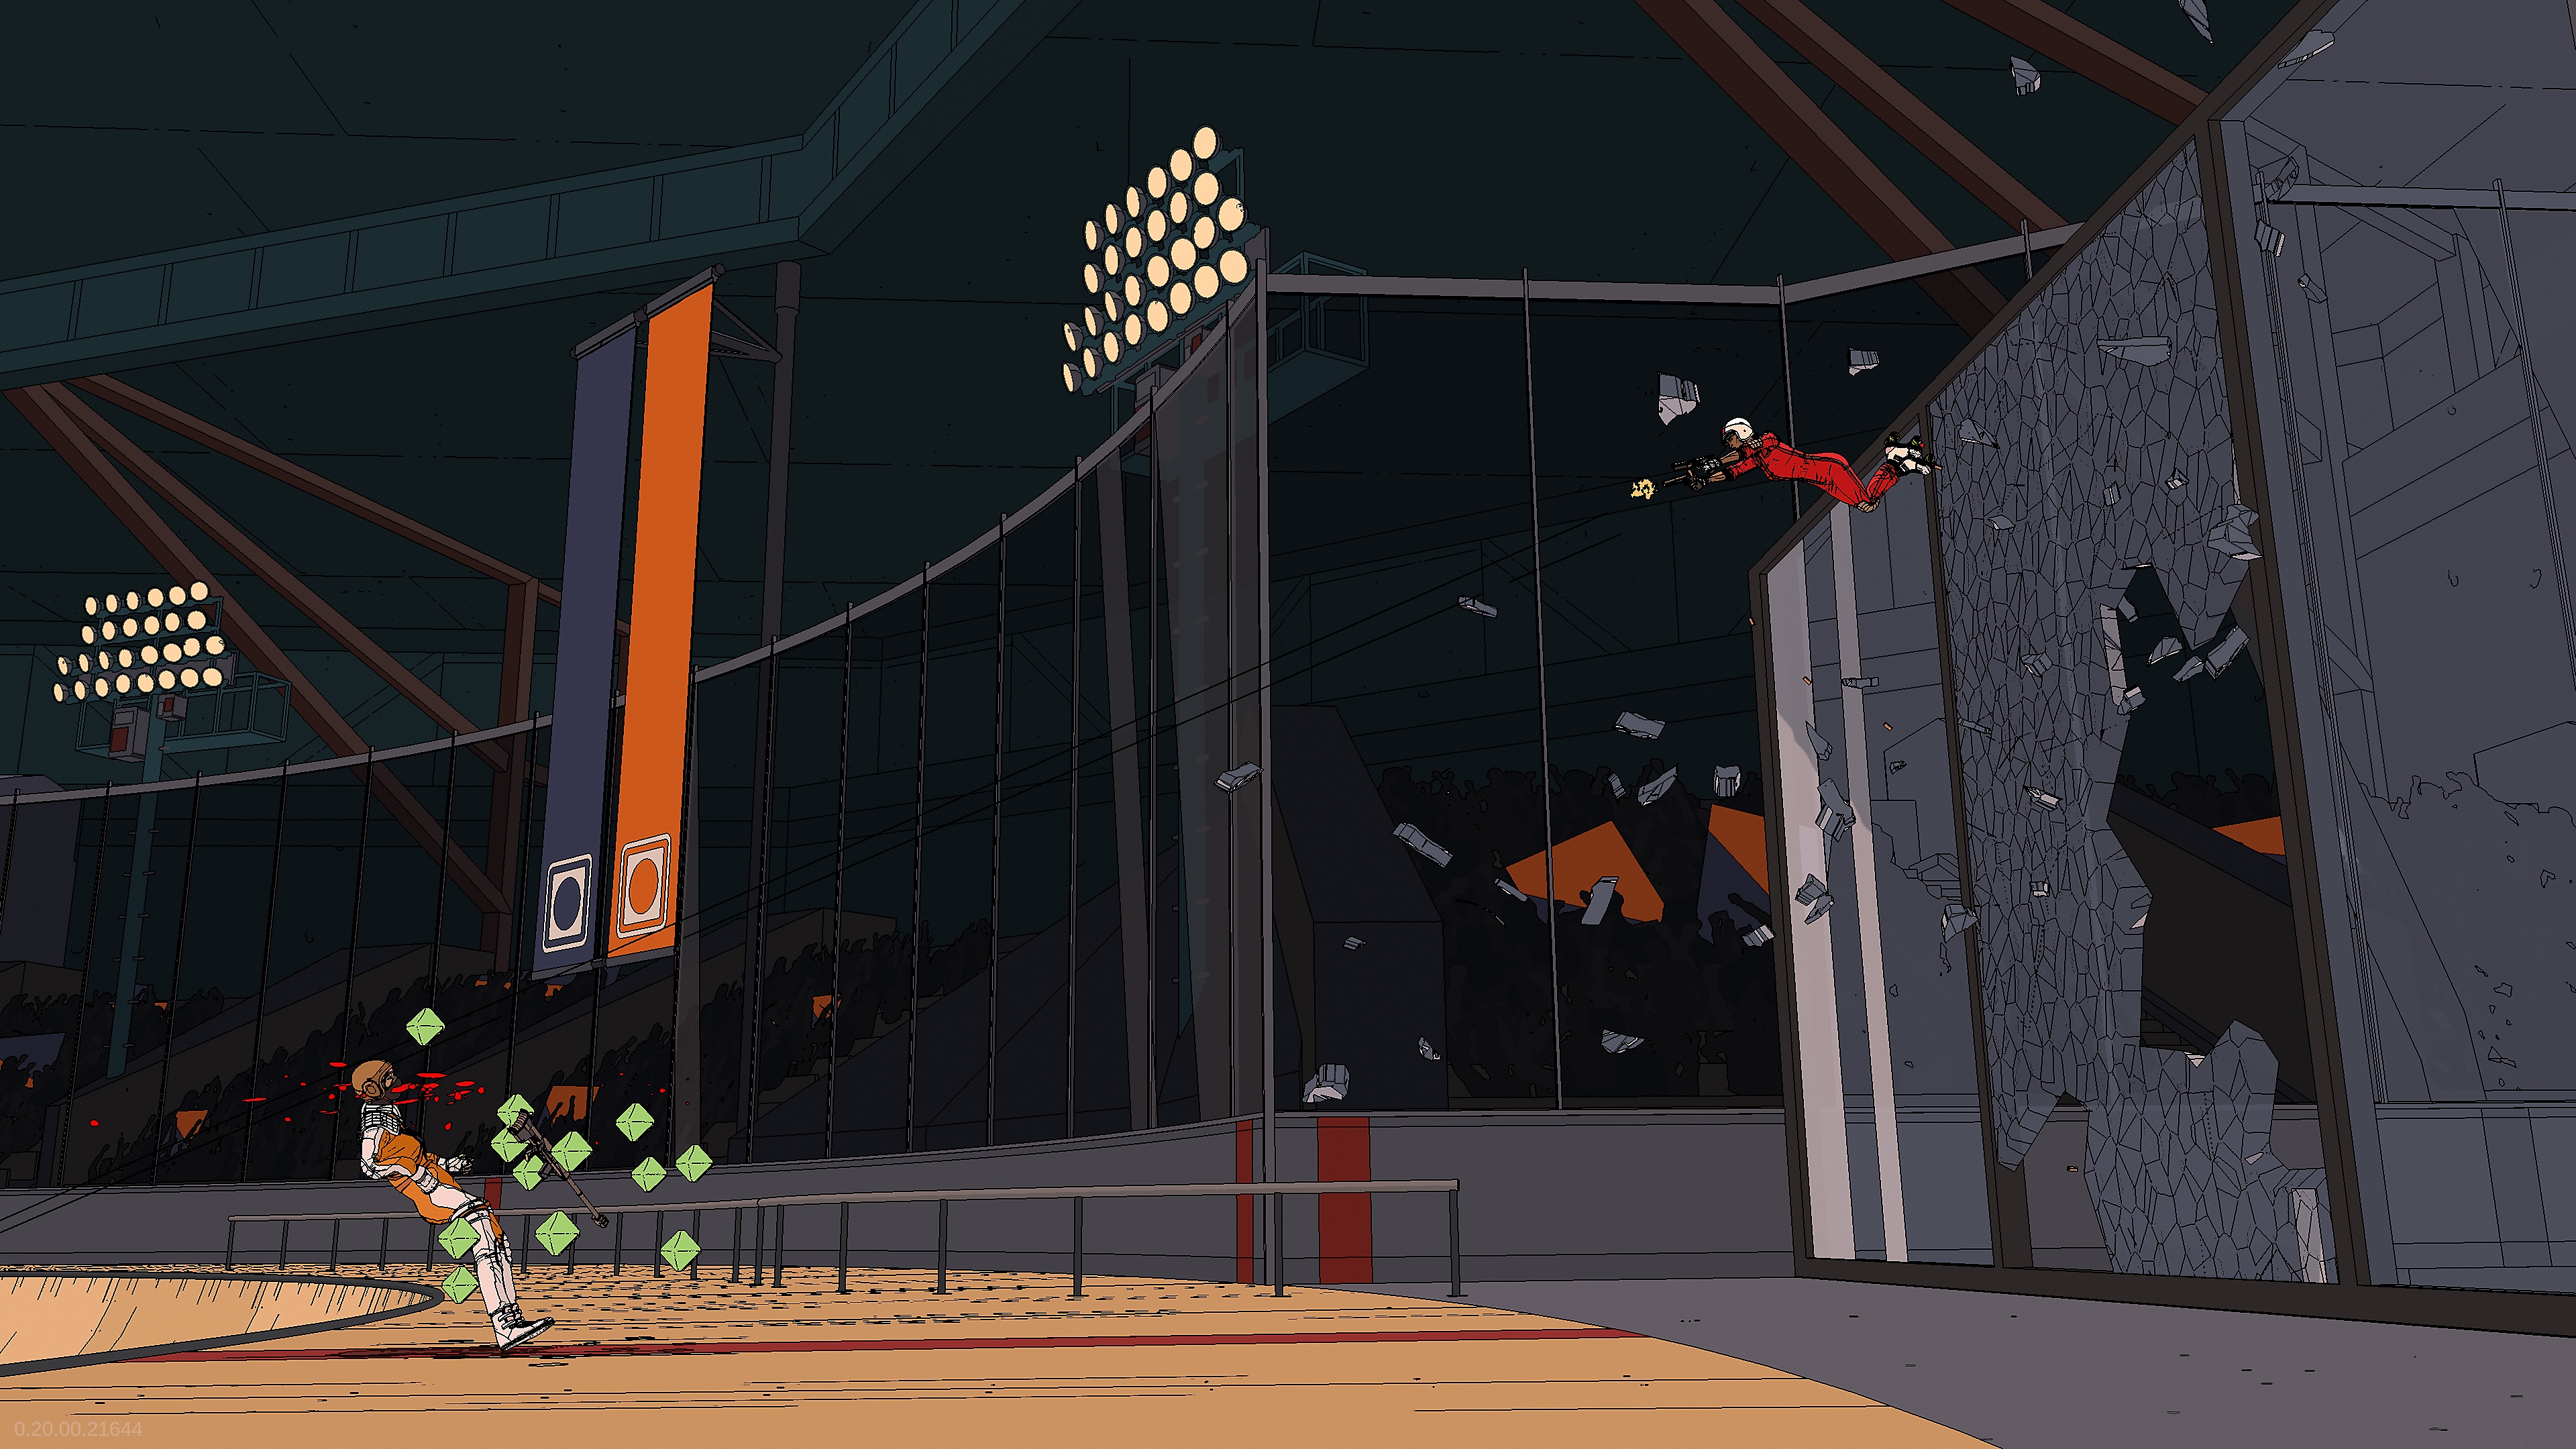 Rollerdrome-pelin kuvakaappaus, jossa taistelija lentää lasiseinän läpi kohti vastustajaa